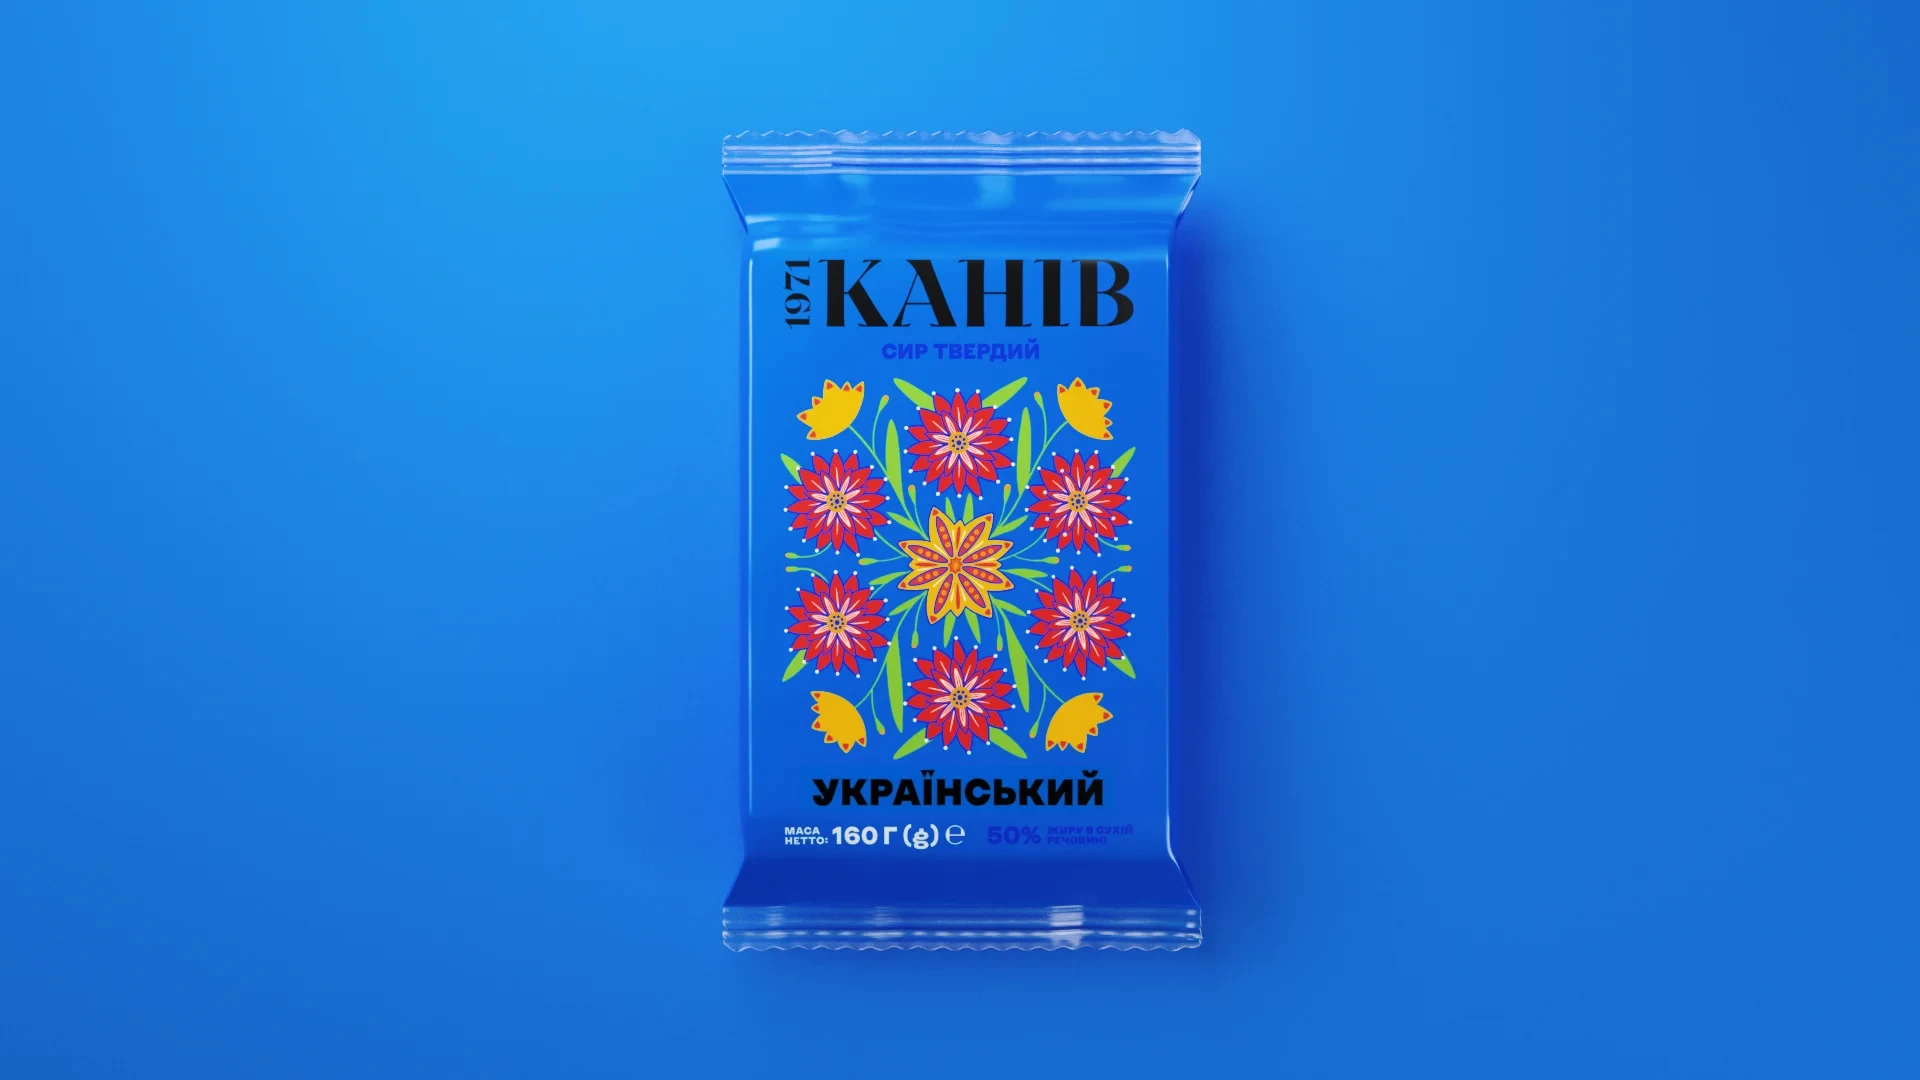 <div>Кожна упаковка розповідає українцям про зникомі види, що потребують охорони. І про мальовничий край, де вони оселилися.</div>